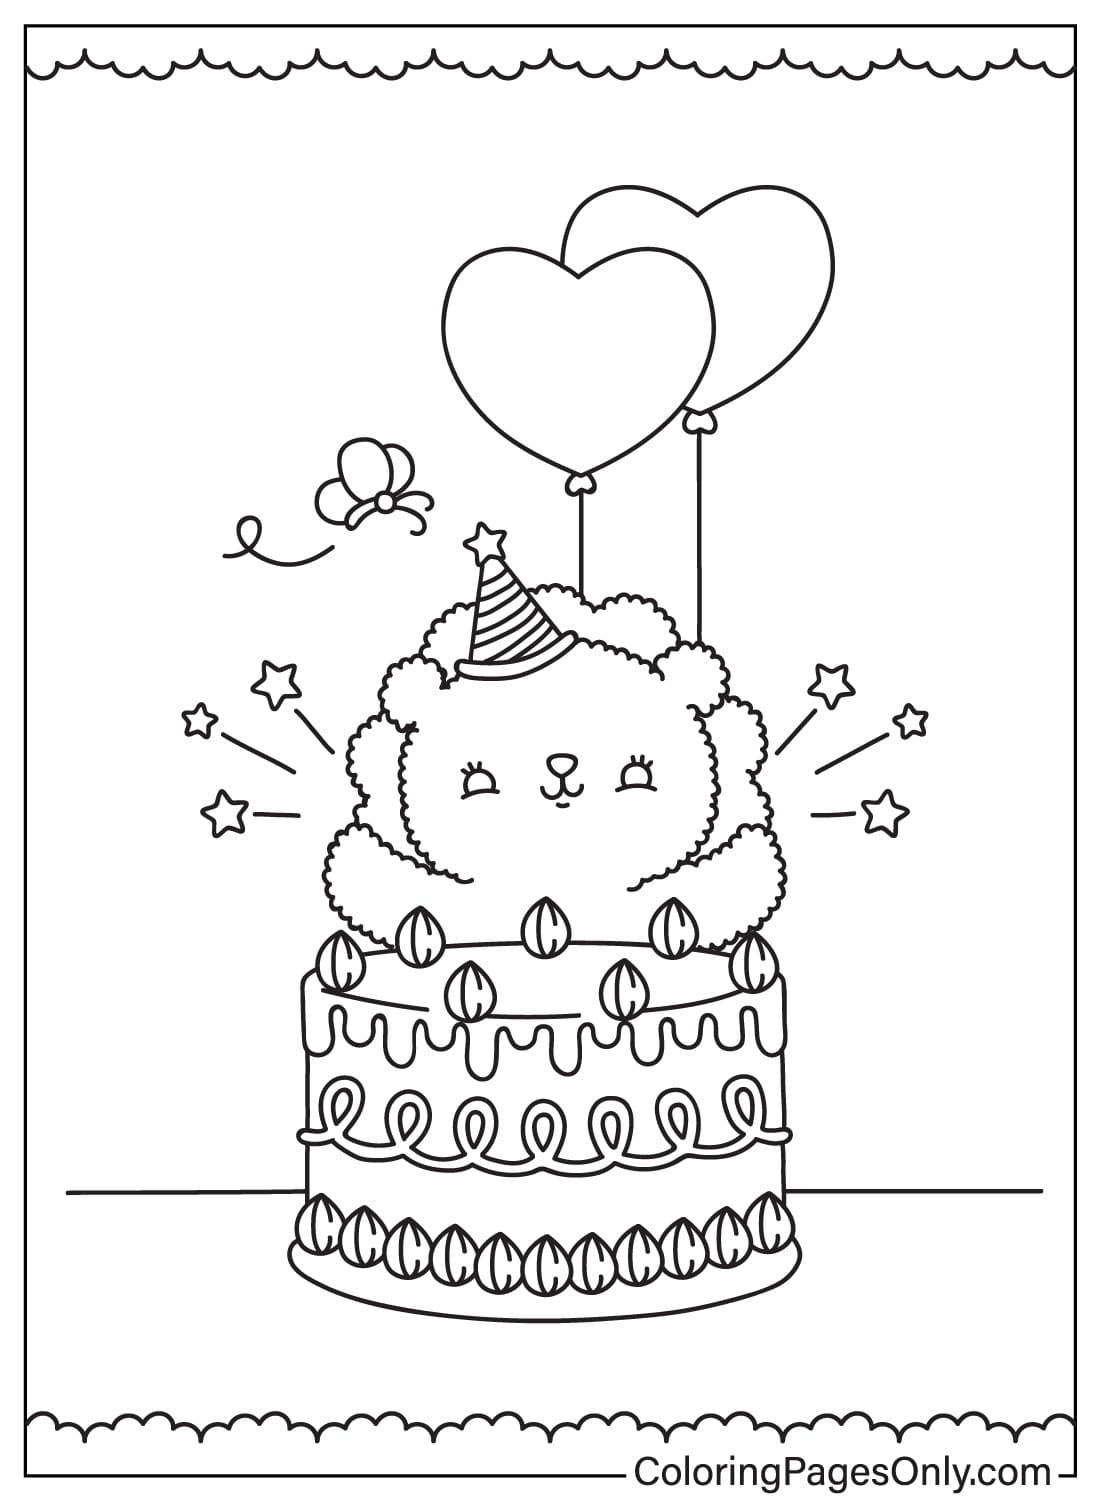 Раскраски для торта ко дню рождения, которые можно скачать с сайта Birthday Cake